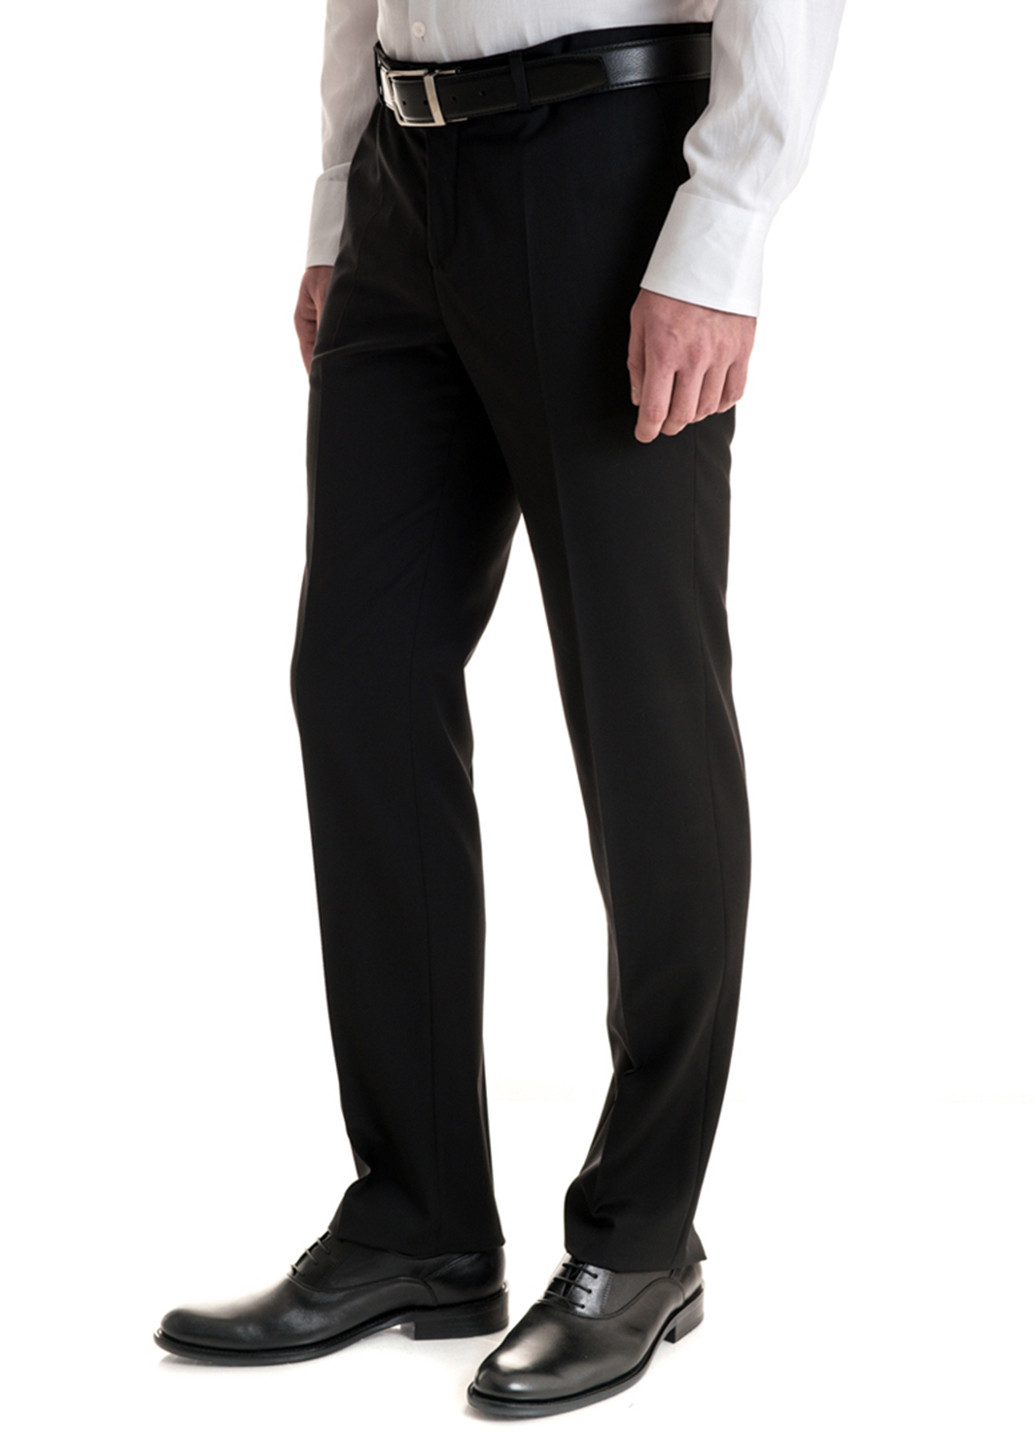 Черный демисезонный костюм (пиджак, брюки) брючный Gregory Arber